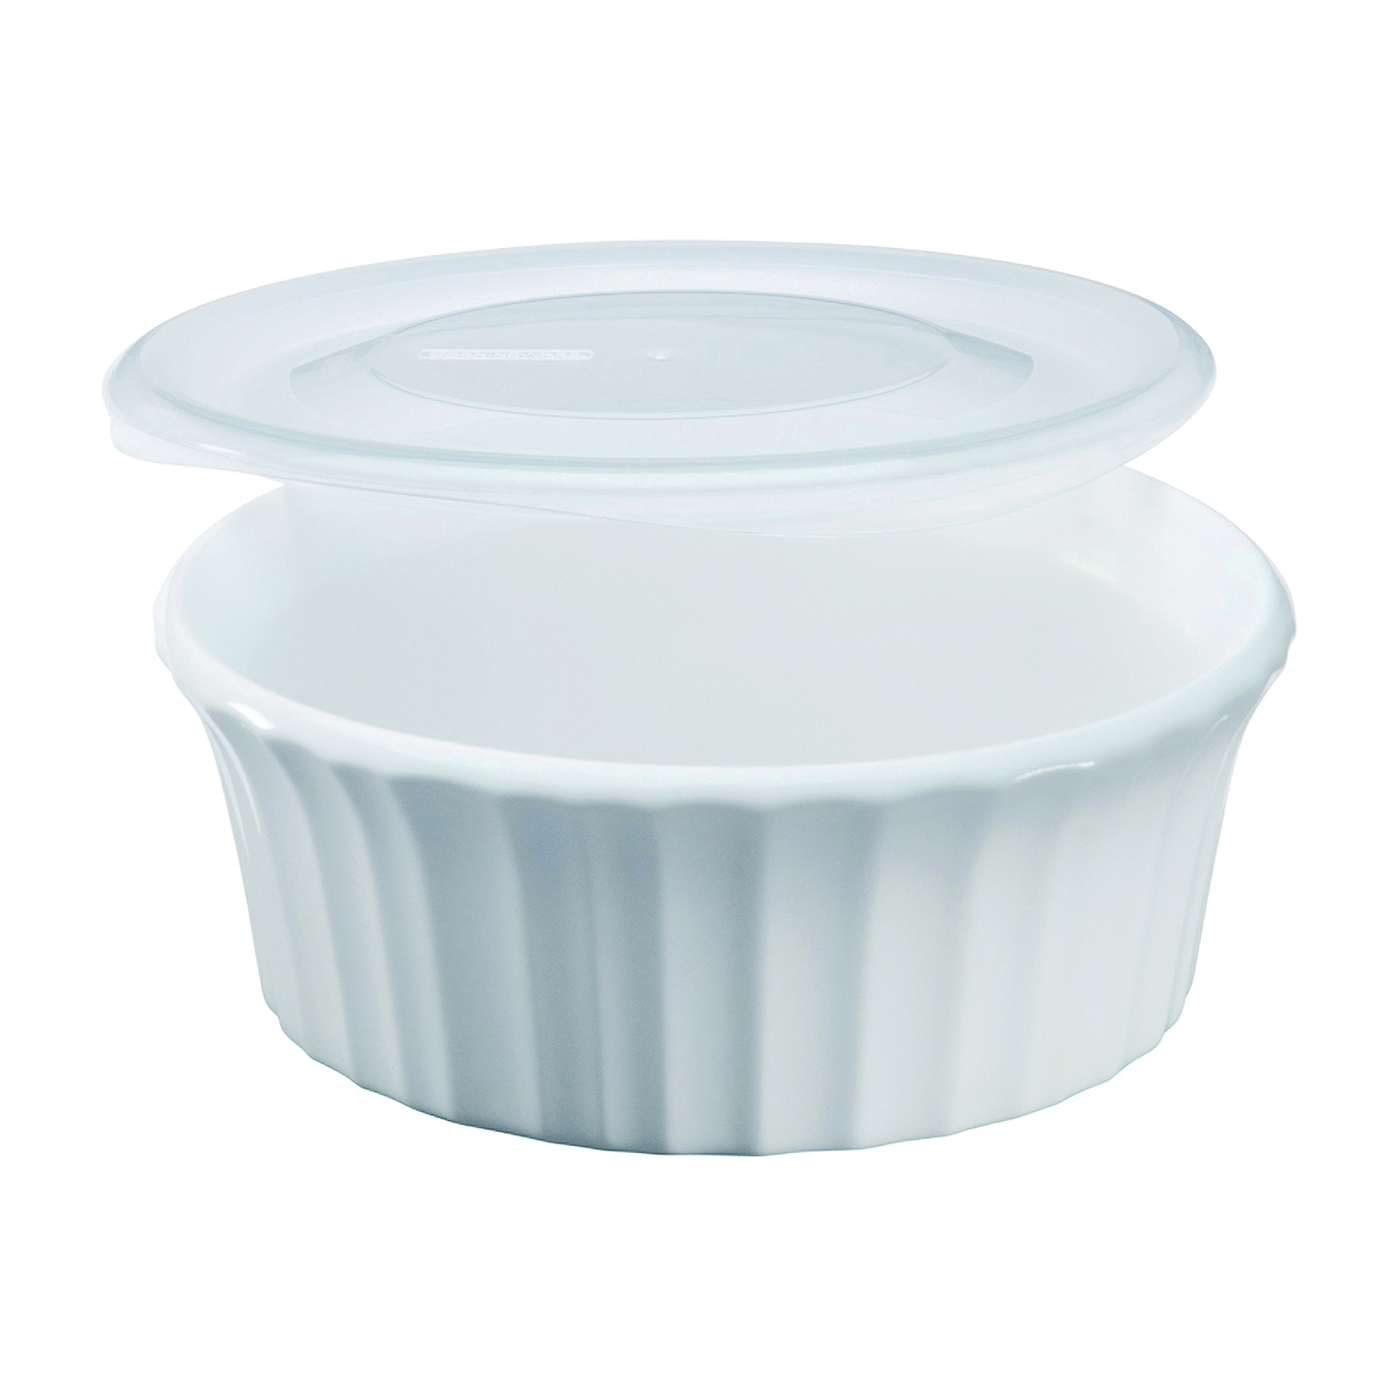 1114931 Casserole Dish with Lid, 16 oz Capacity, Ceramic, French White, Dishwasher Safe: Yes